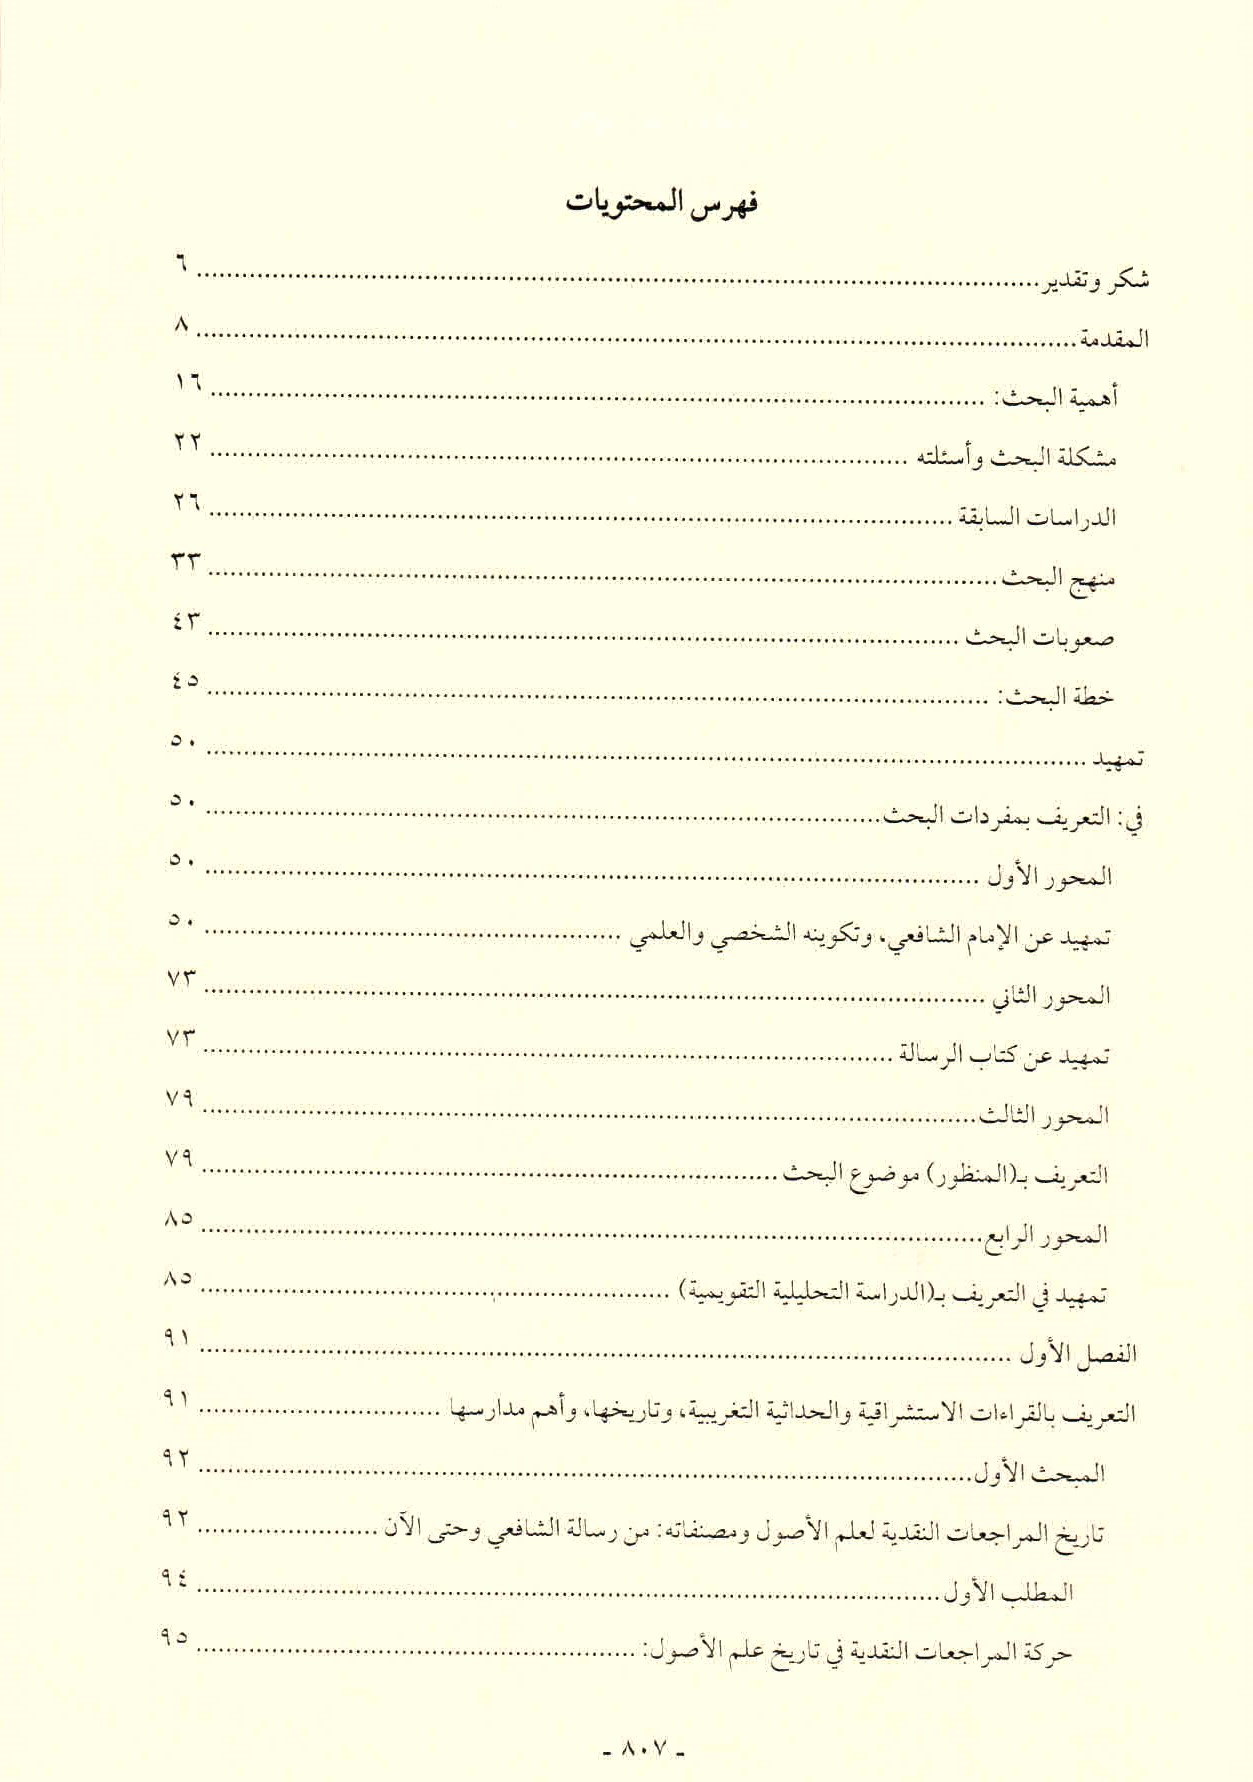 قائمة محتويات كتاب افتراءات المستشرقين والحداثيين على أصول الشريعة وأئمتها للدكتور هاني محمود ص. 807